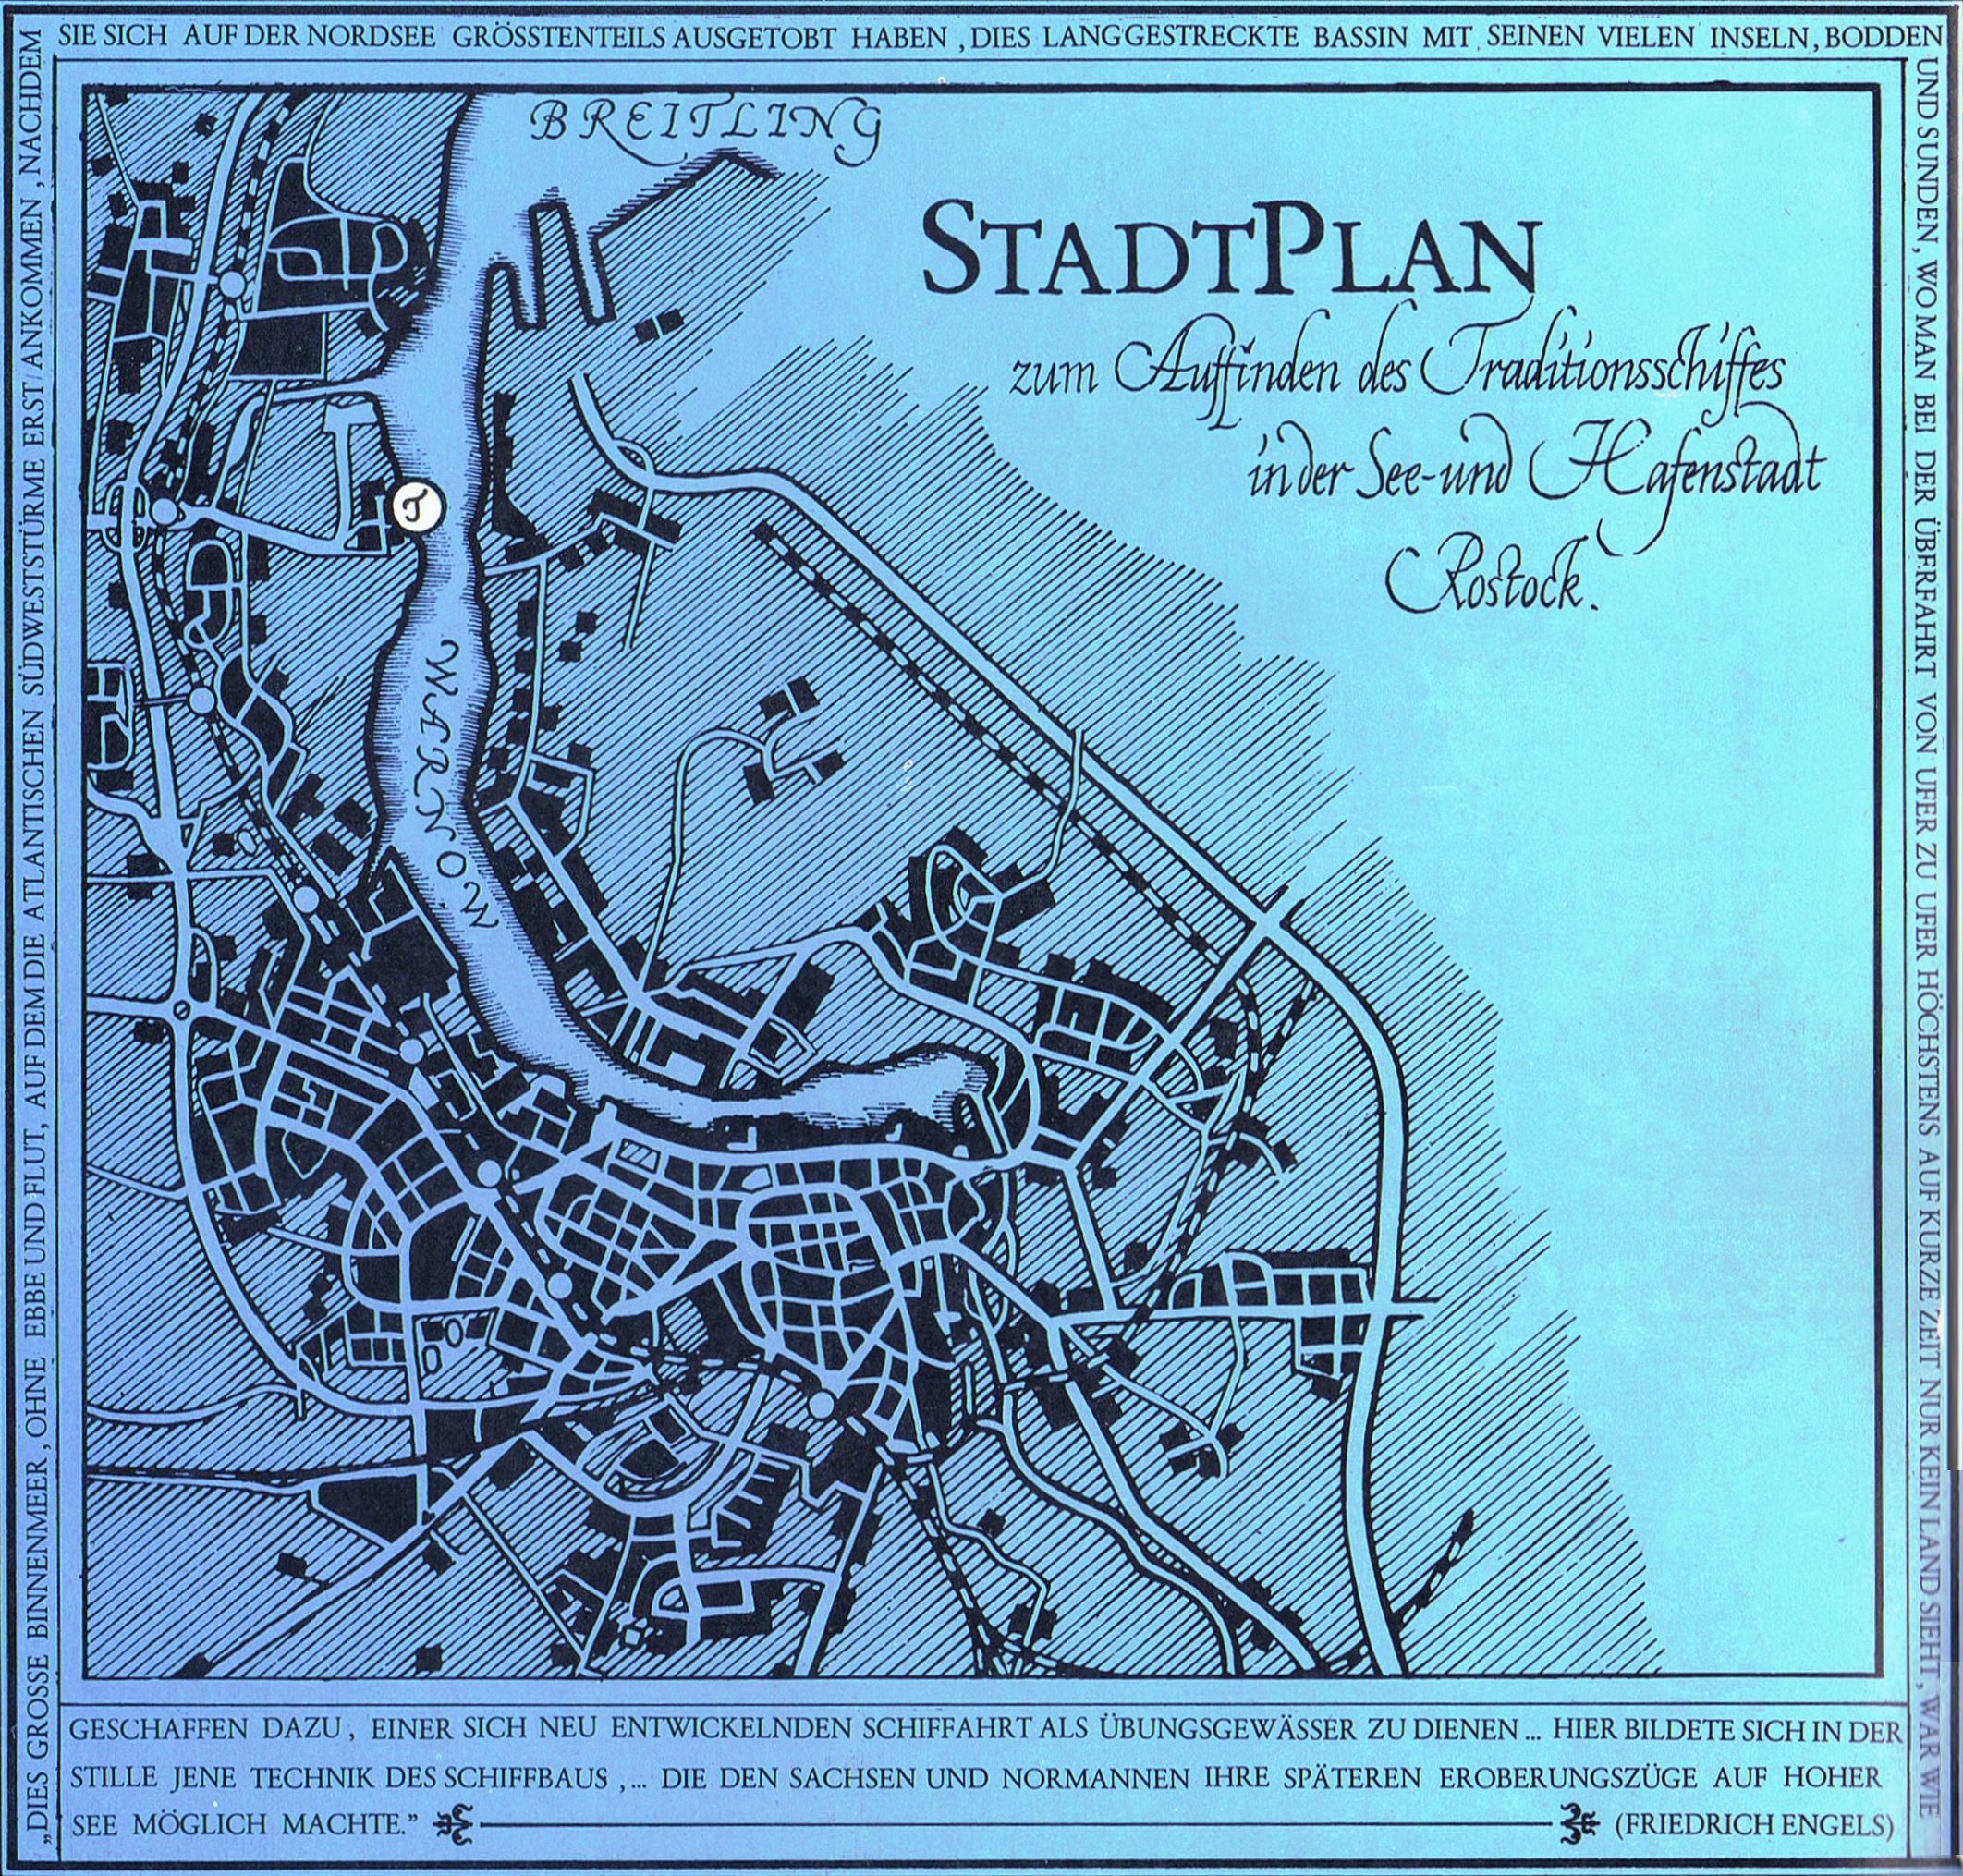 ../../xlmedia/slr-rostock-stadtplan-1988.jpg